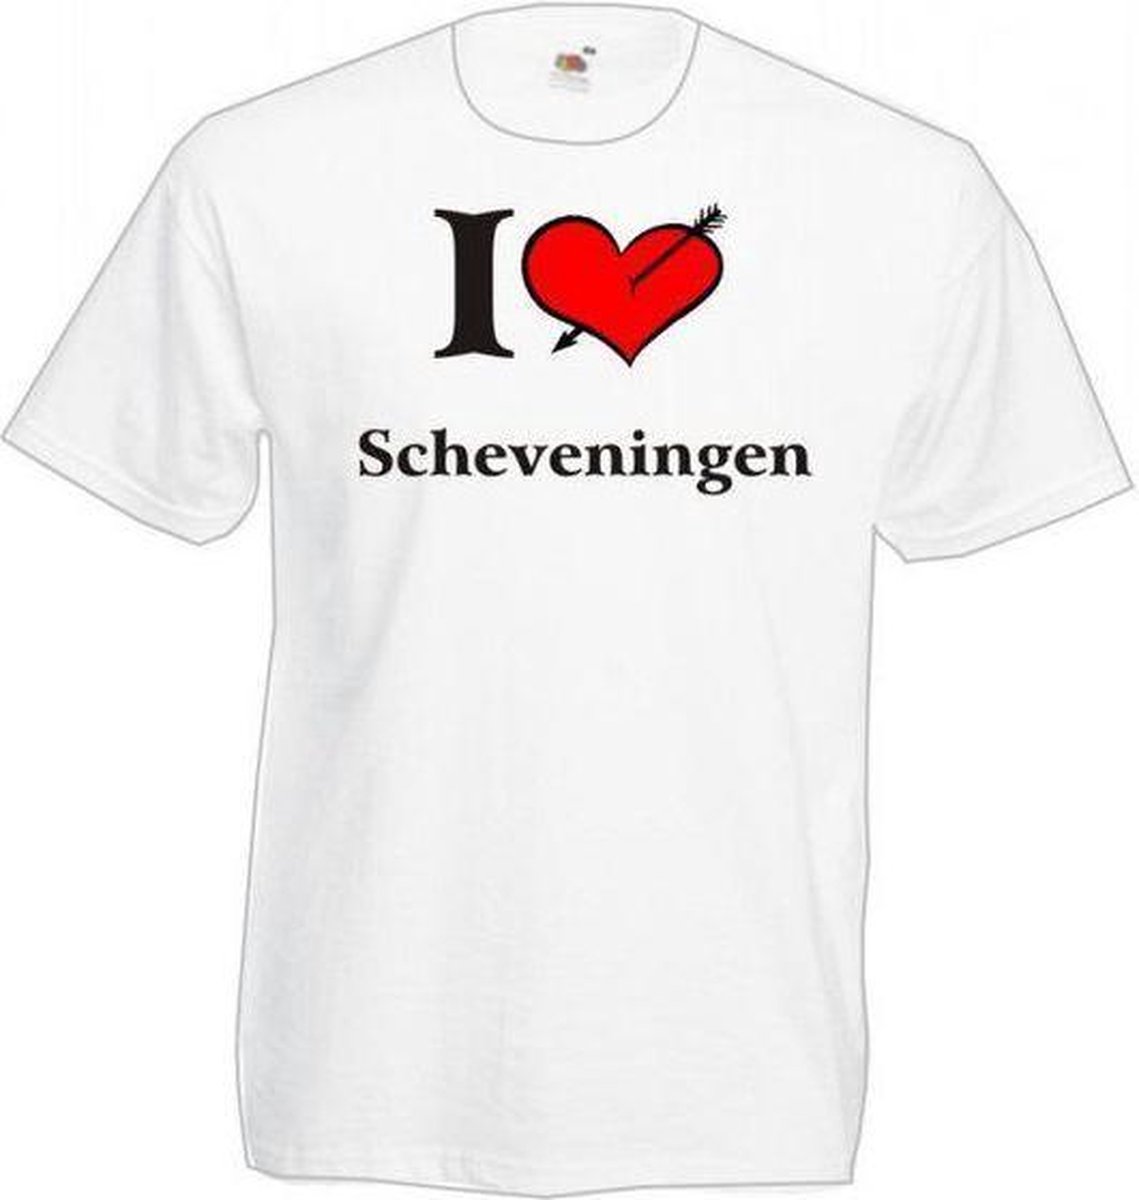 T Shirt Bedrukken Scheveningen Top Sellers, 60% OFF | xevietnam.com